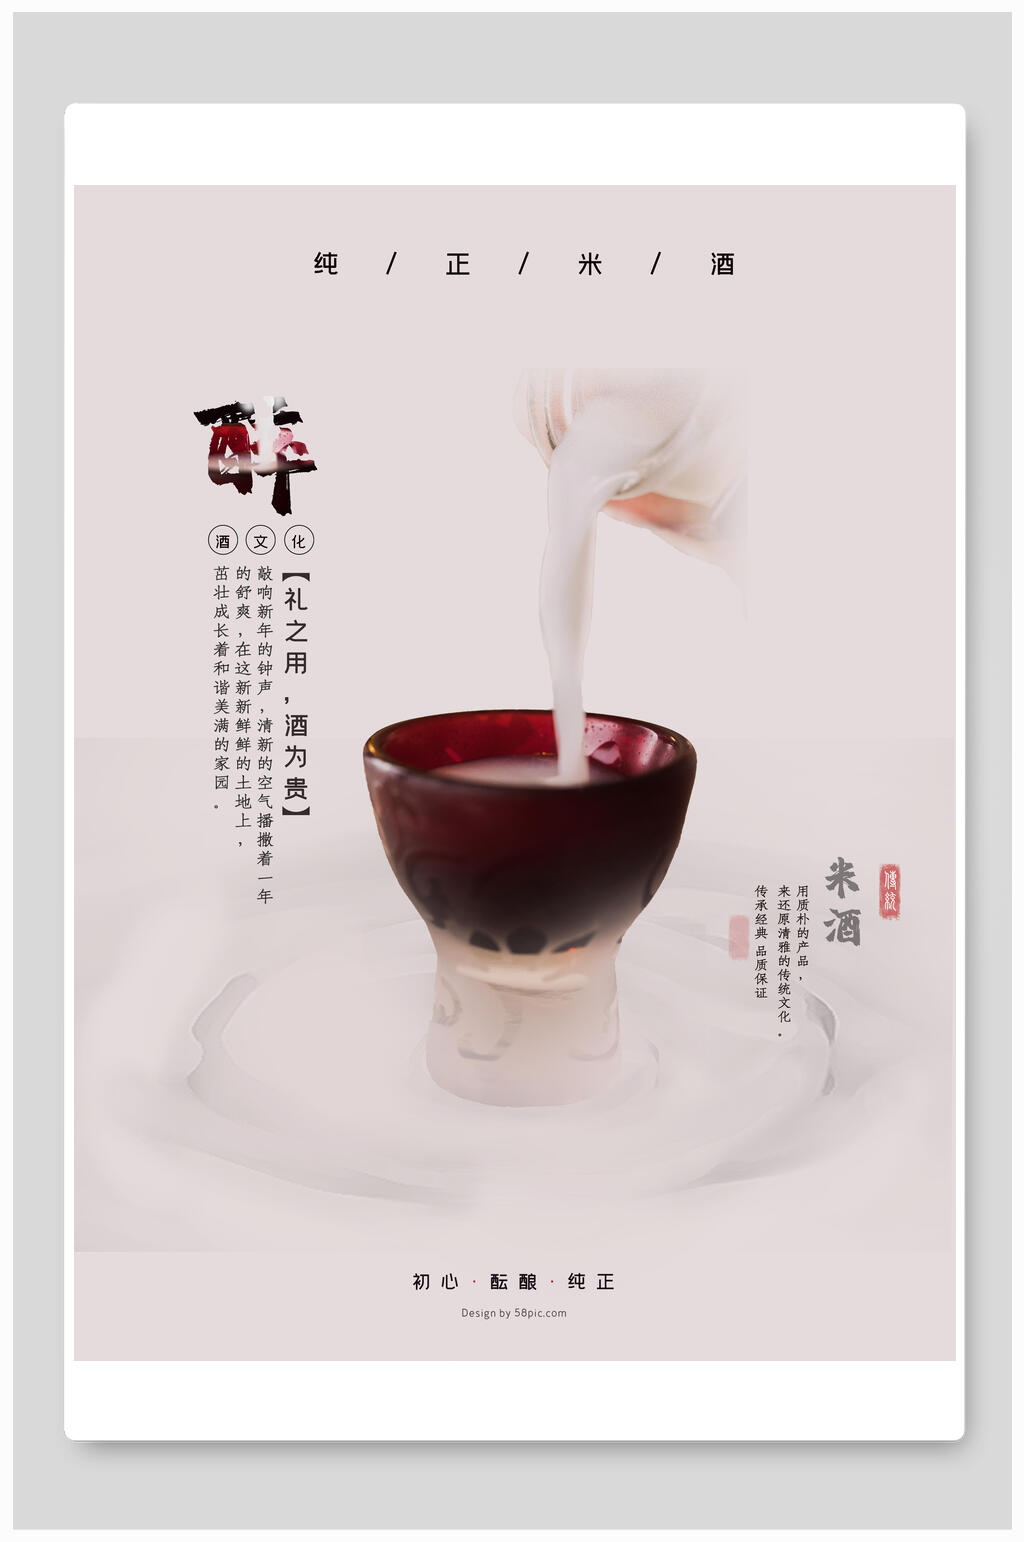 众图网独家提供醉美浓香来酒海报设计素材免费下载,本作品是由小红